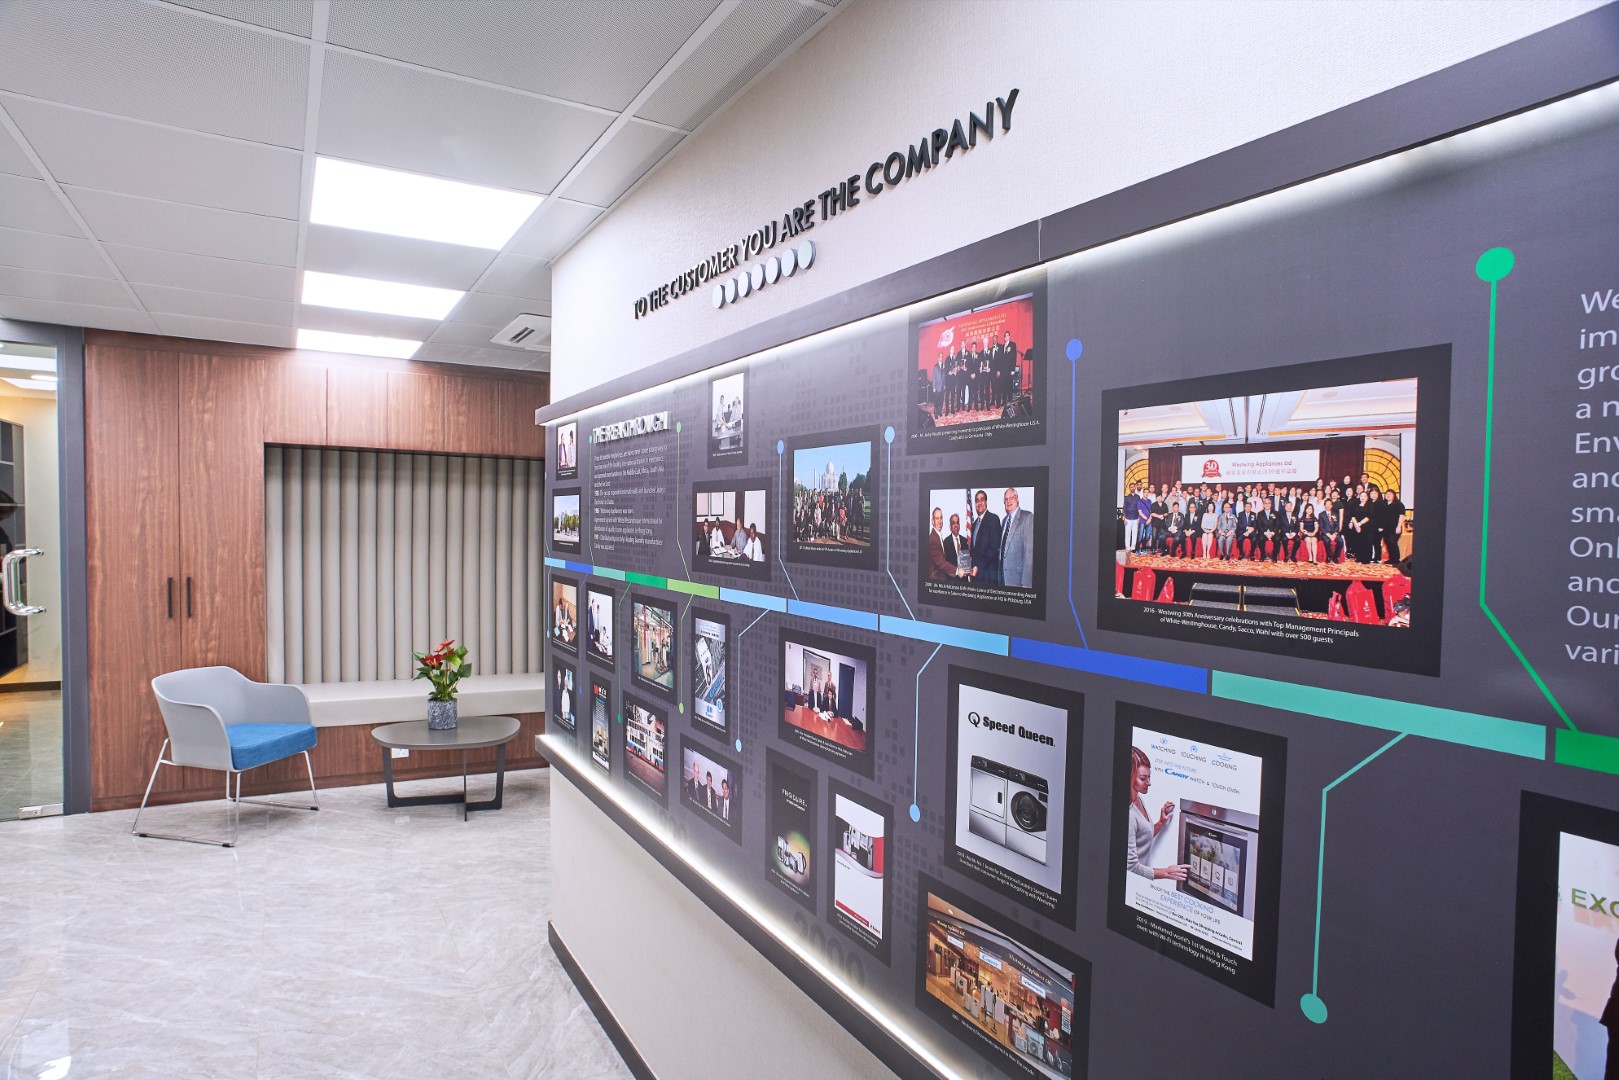 Company History wall